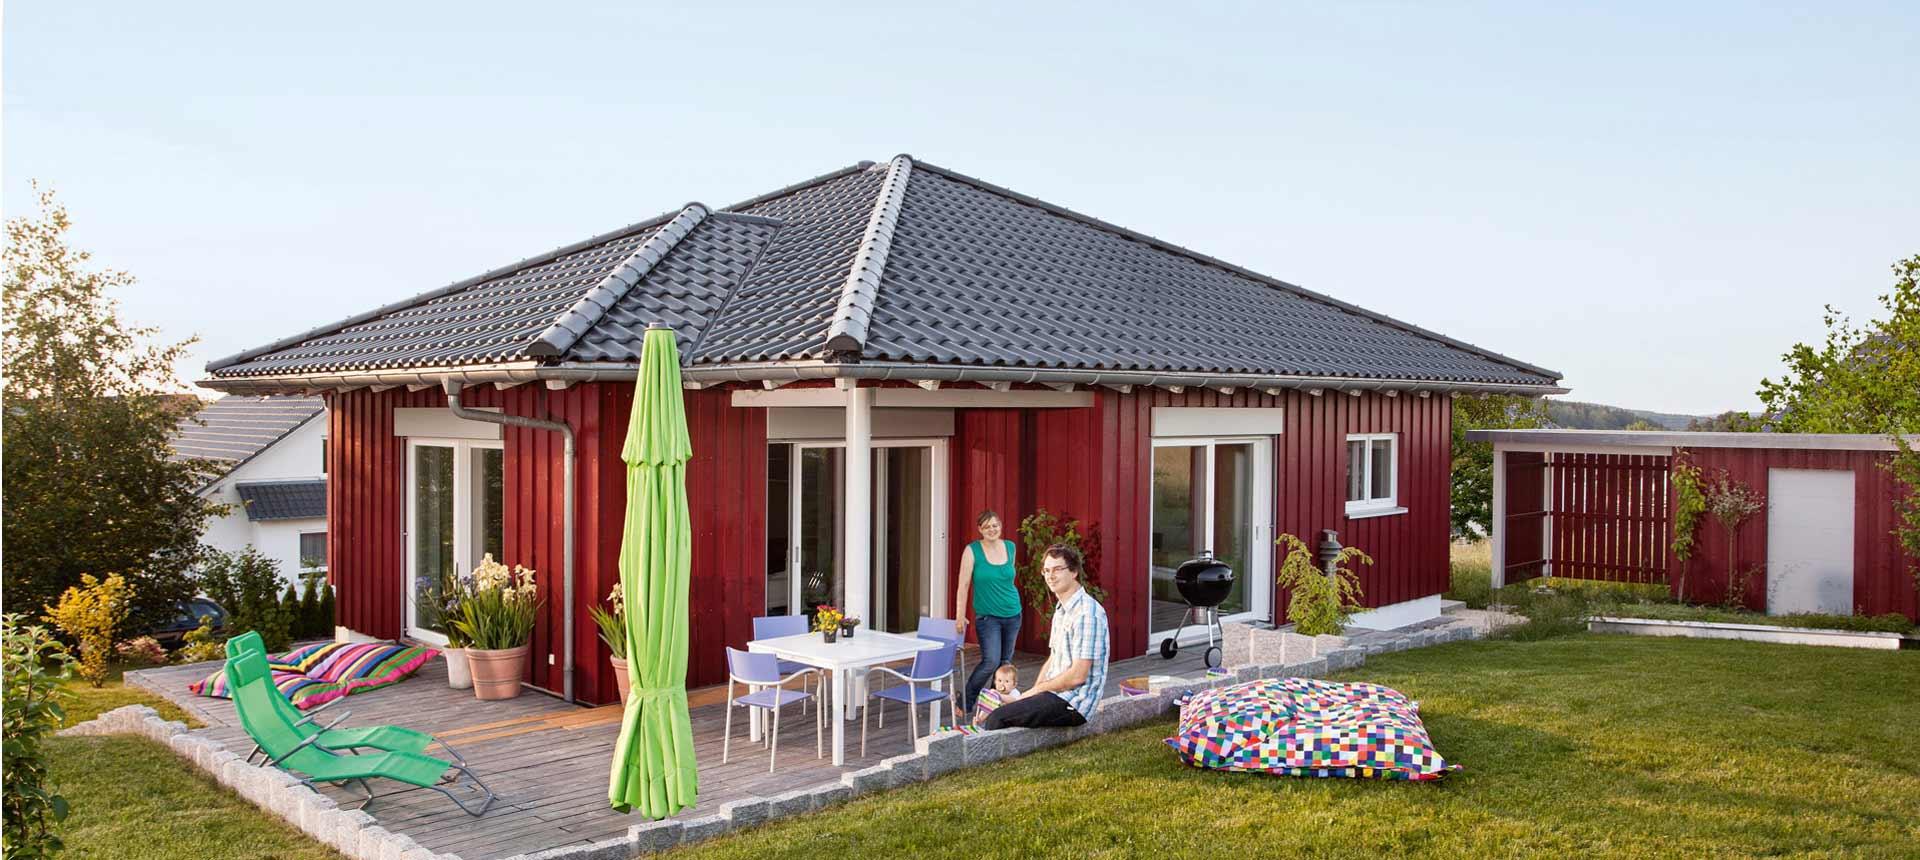 Scandinavian bungalow